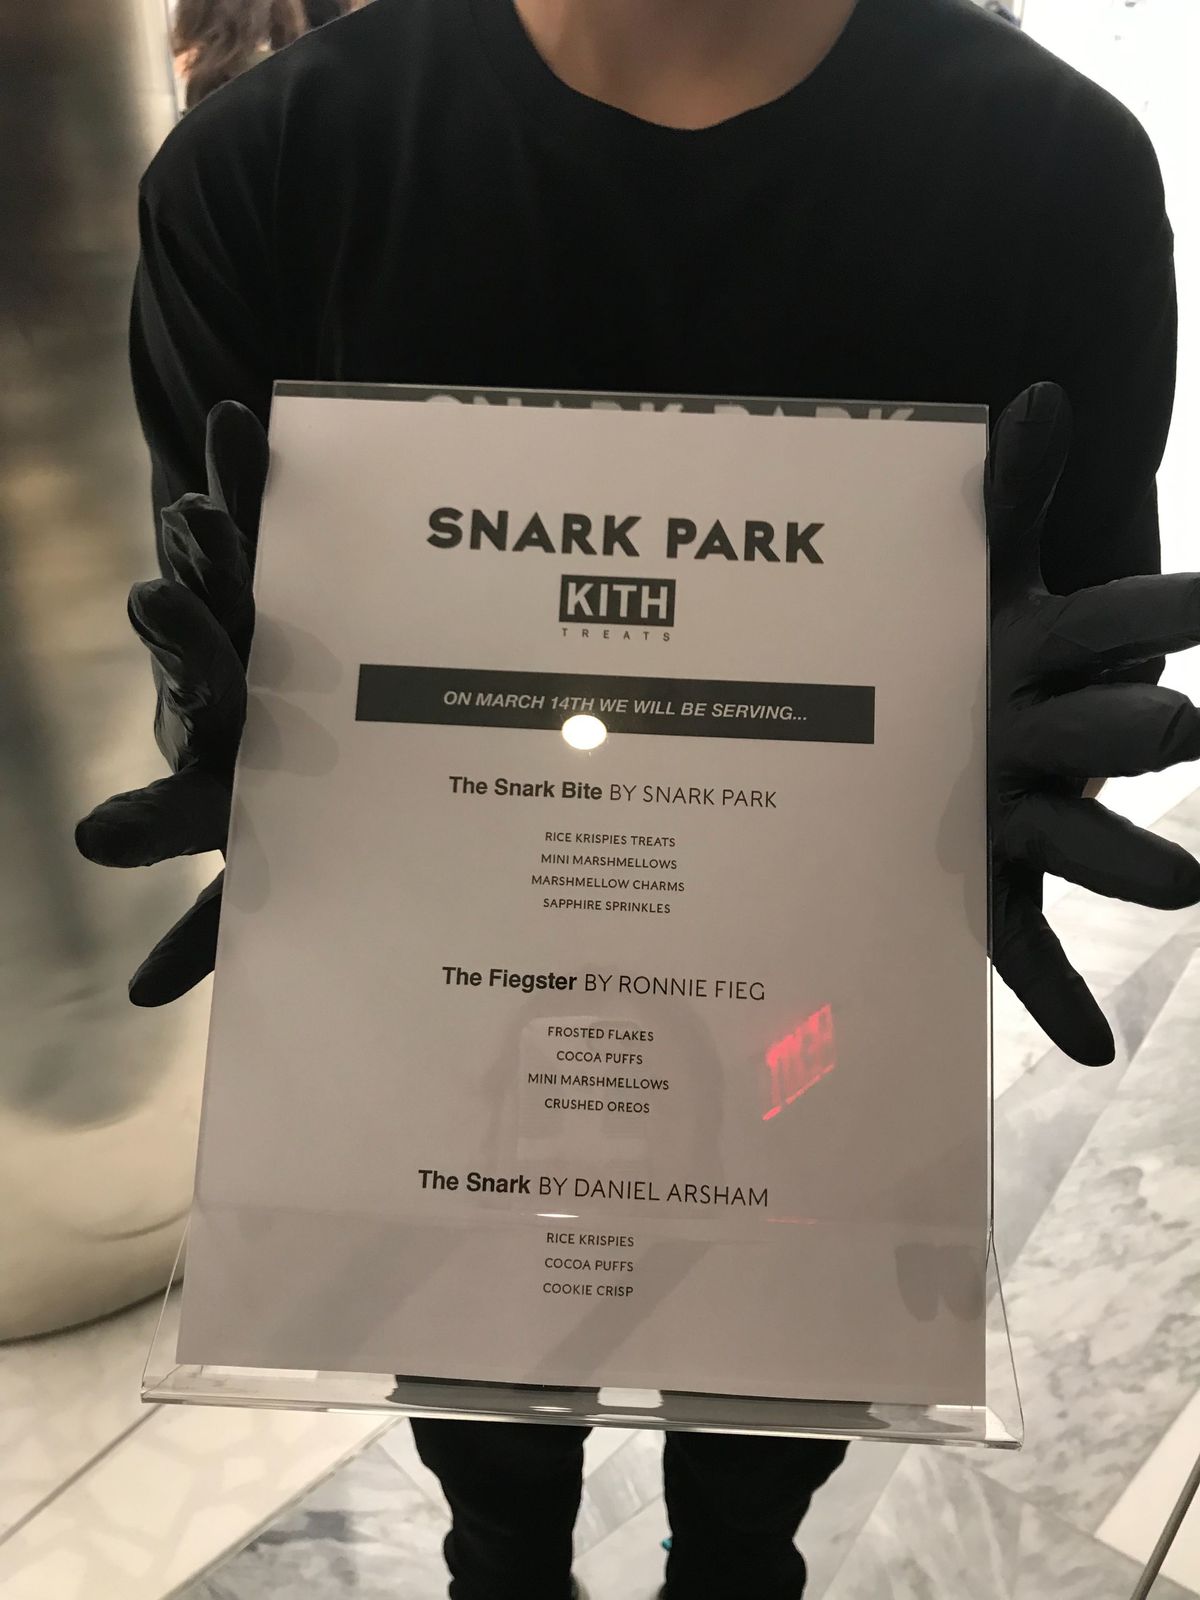 Kith at Snark Park menu